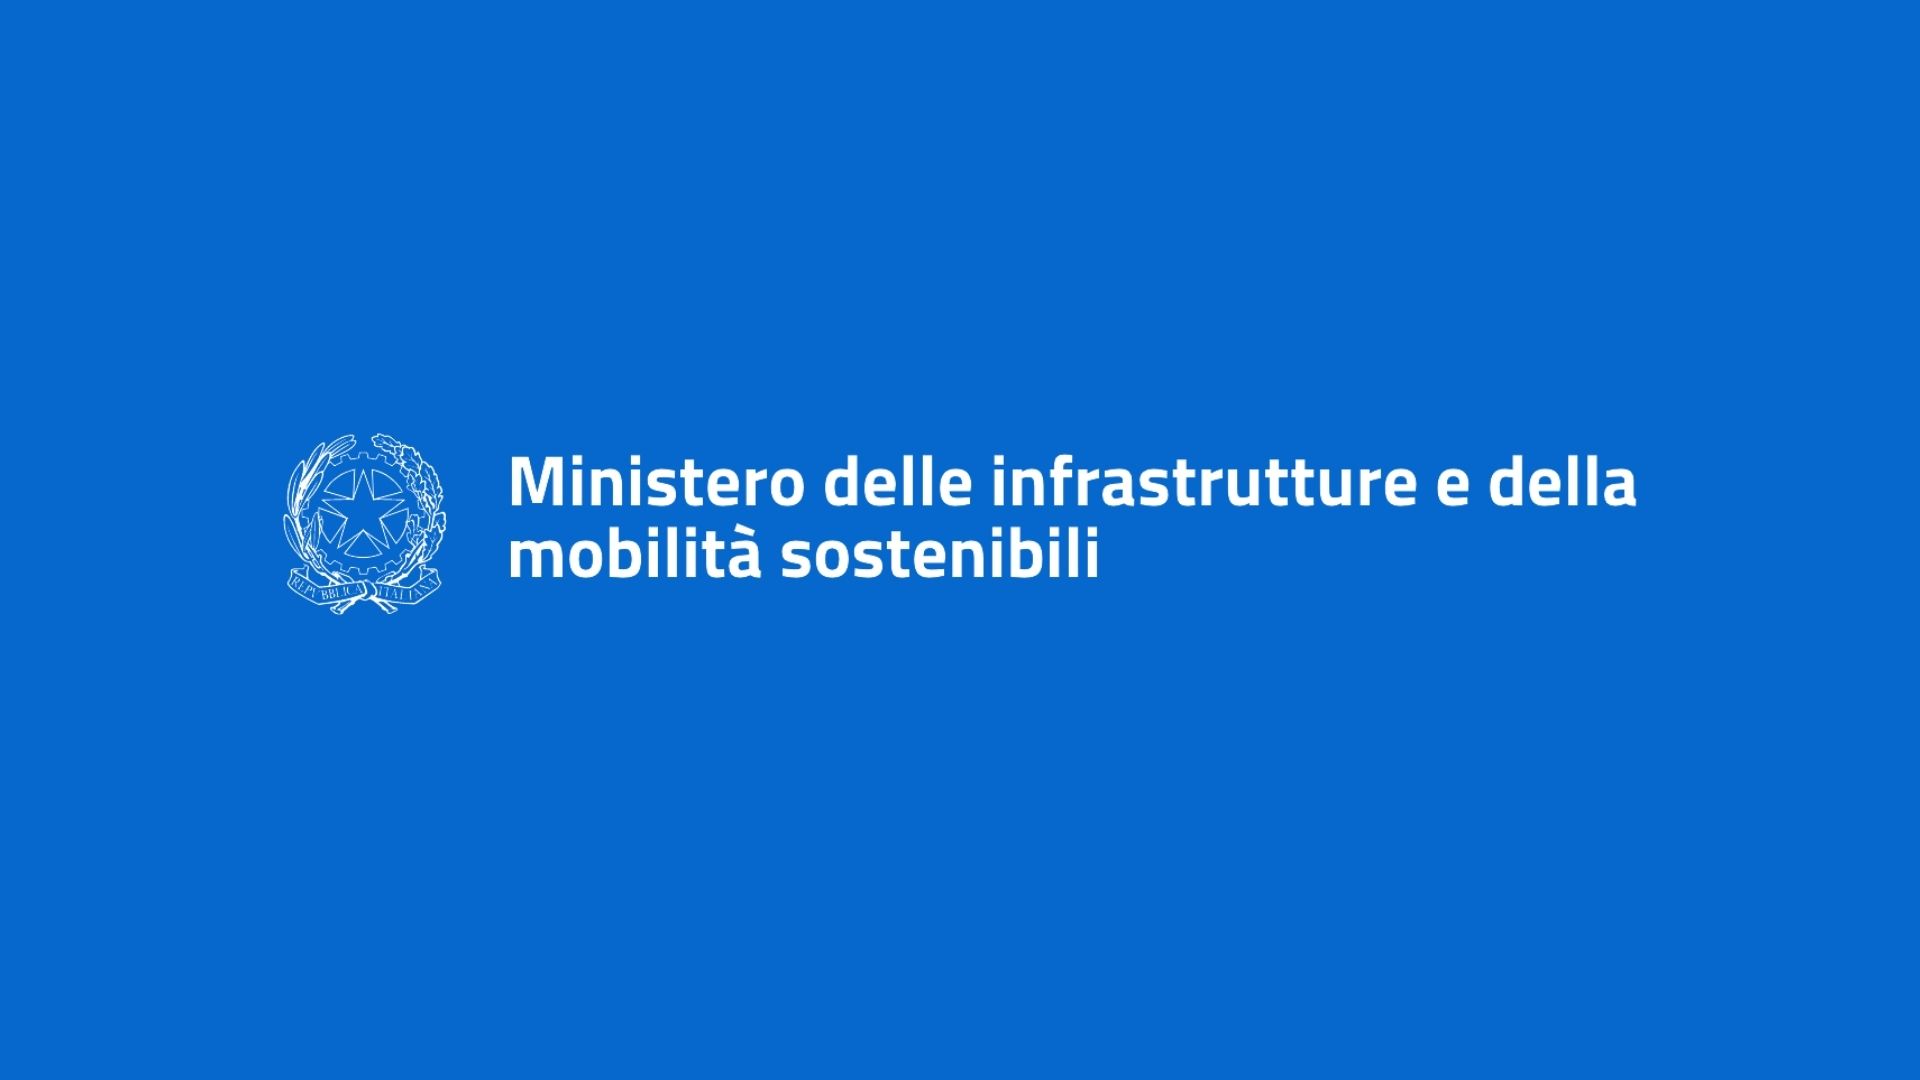 Ministero delle infrastrutture e della mobilita sostenibili